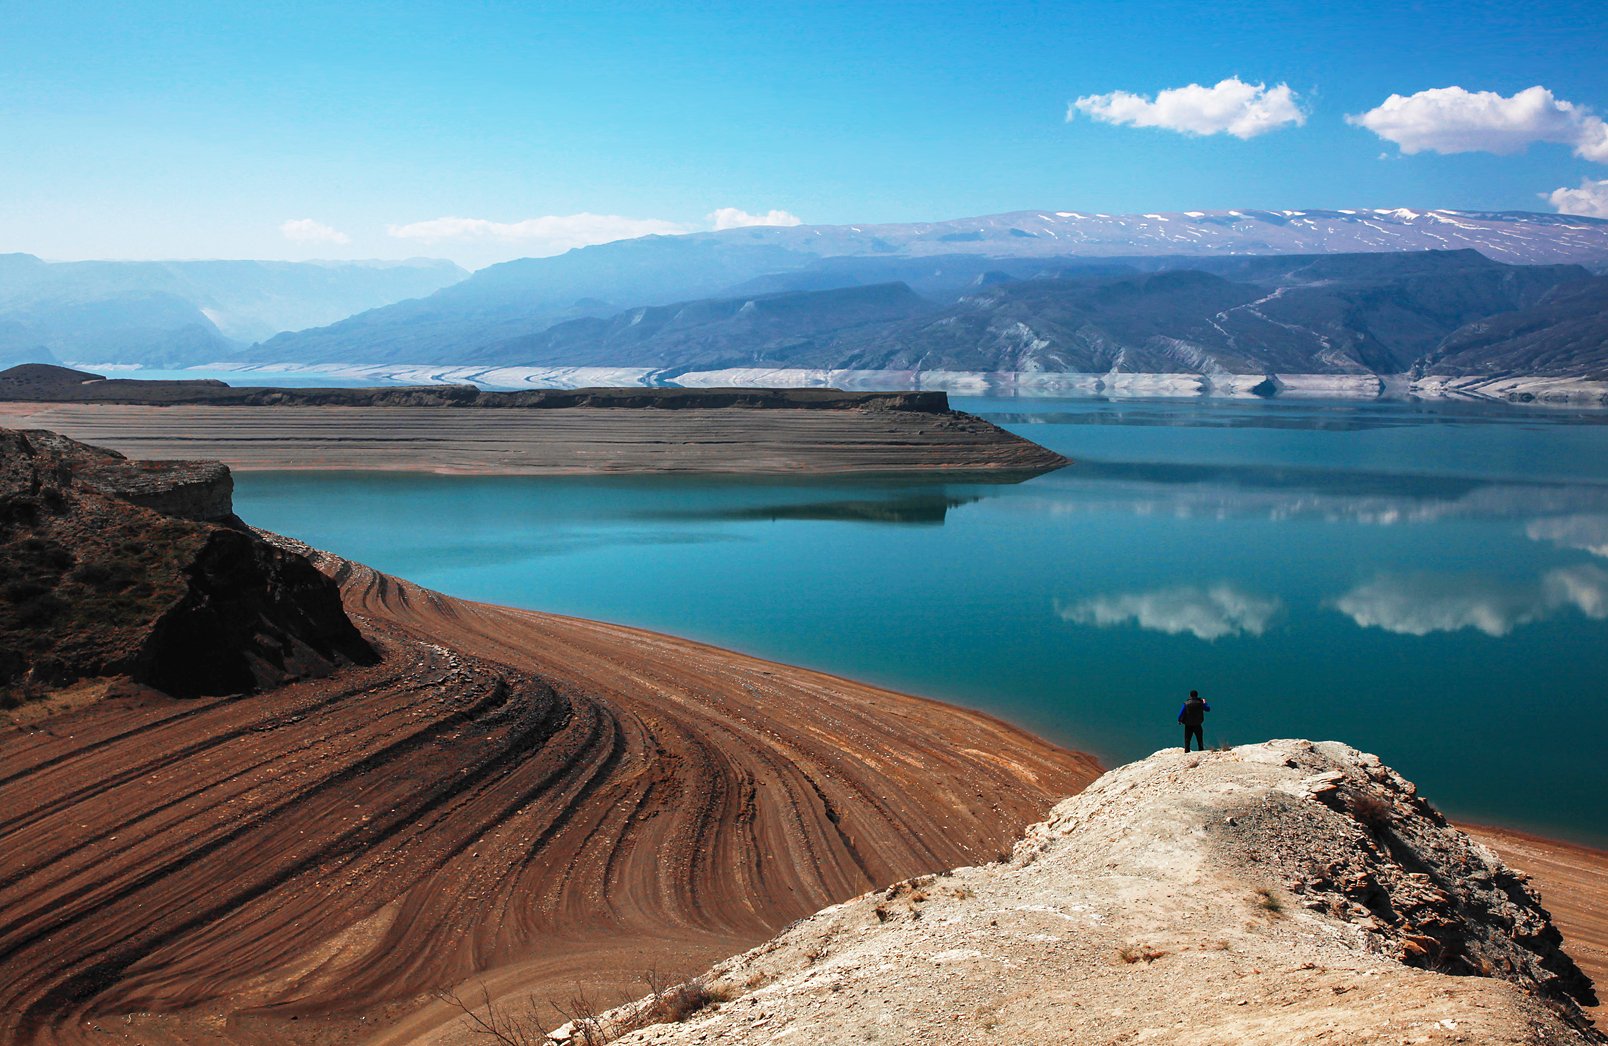 водохранилище,горы,дагестан,унцукульский район,весна,пейзаж, Marat Magov